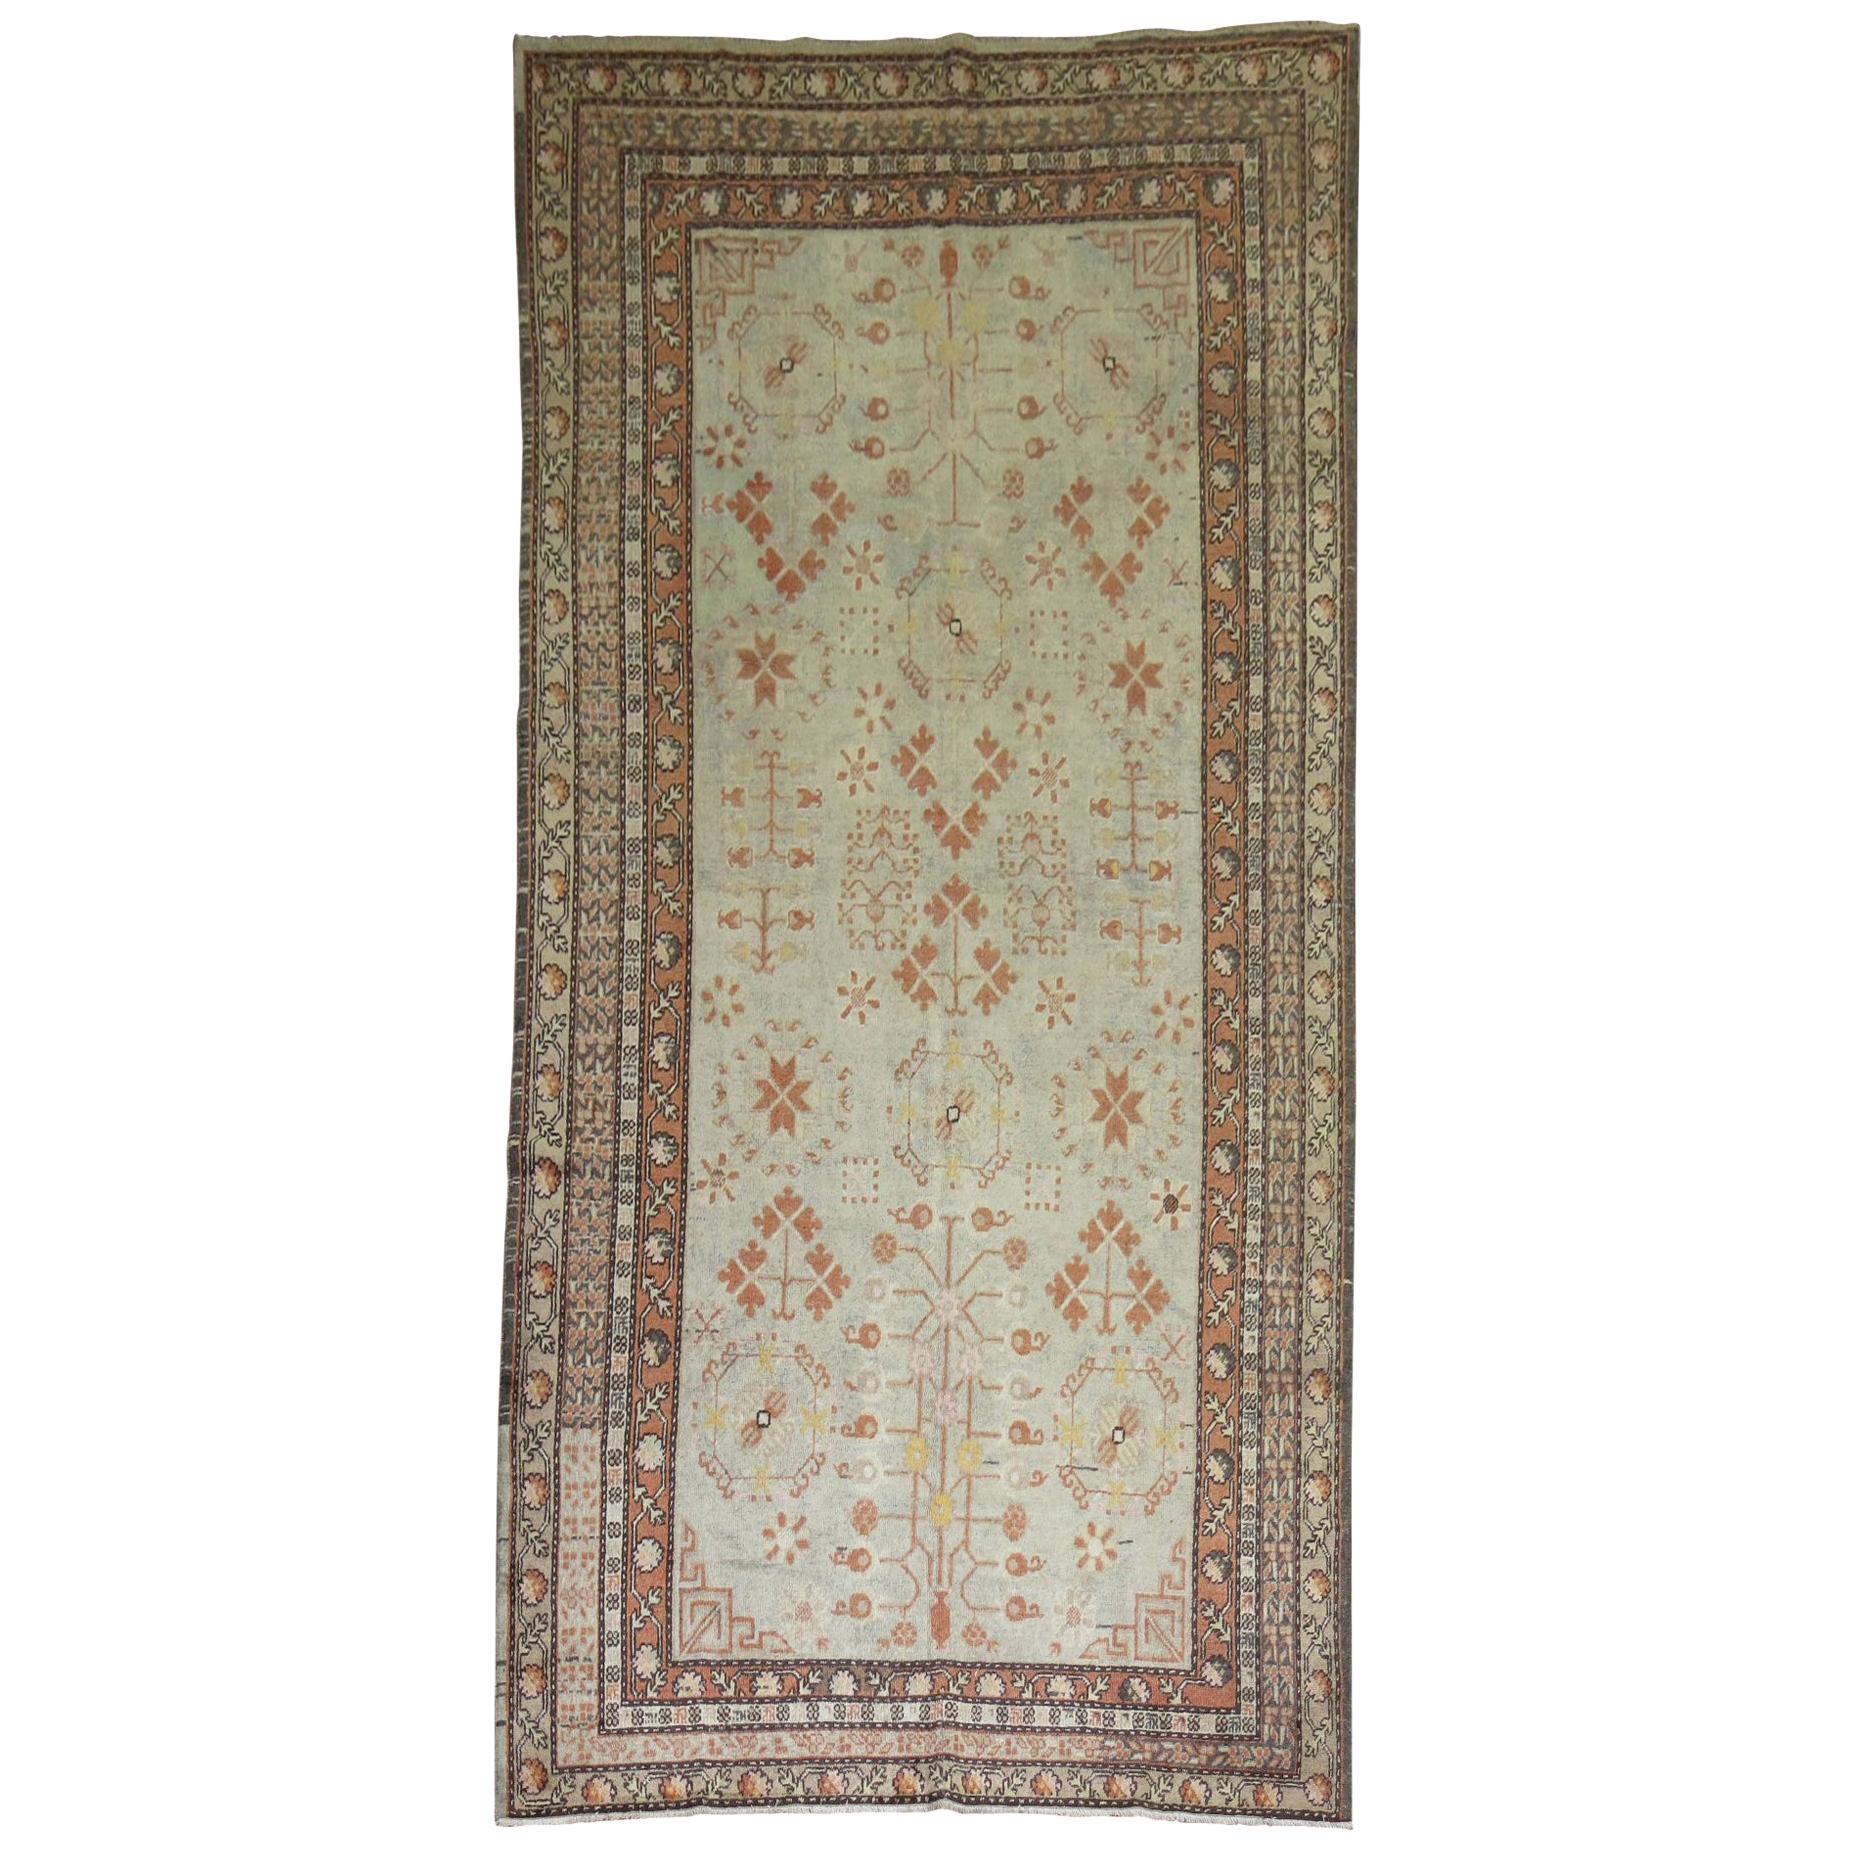 Handgeknüpfter Khotan-Teppich aus Wolle in Elfenbein, Anfang des 20. Jahrhunderts